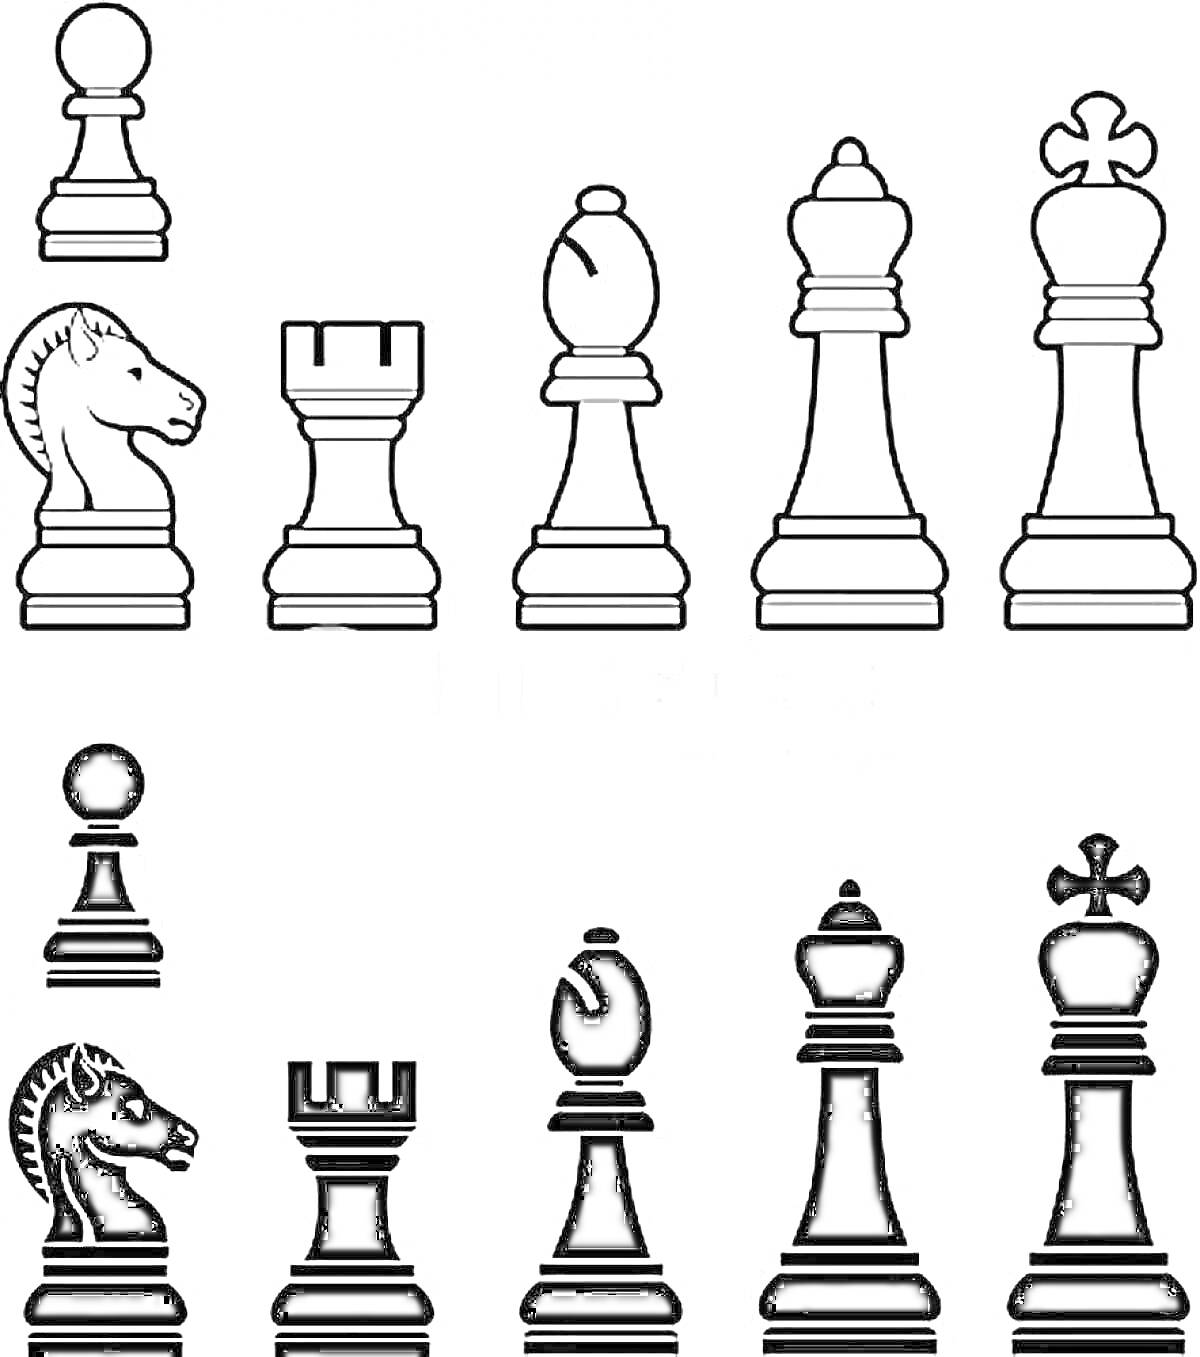 Раскраска чёрные и белые шахматные фигуры - пешка, конь, ладья, слон, ферзь, король